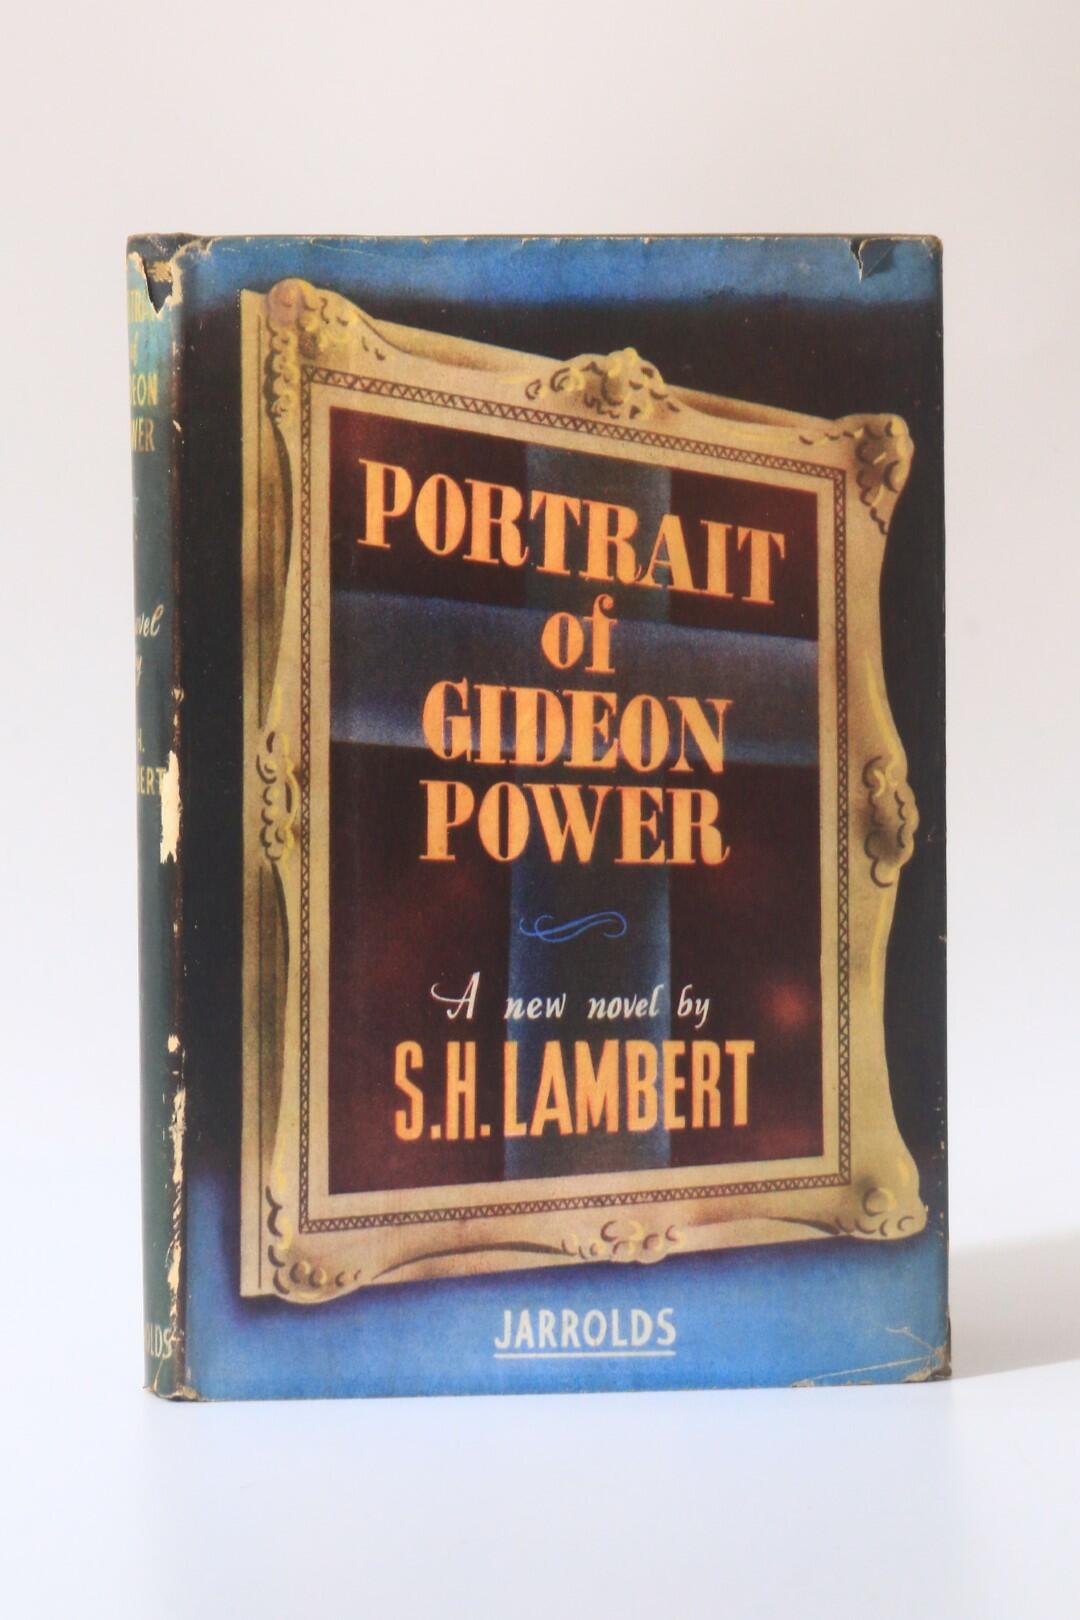 S.H. Lambert [aka Neil Bell] - Portrait of Gideon Power - Jarrolds, 1944, Signed First Edition.